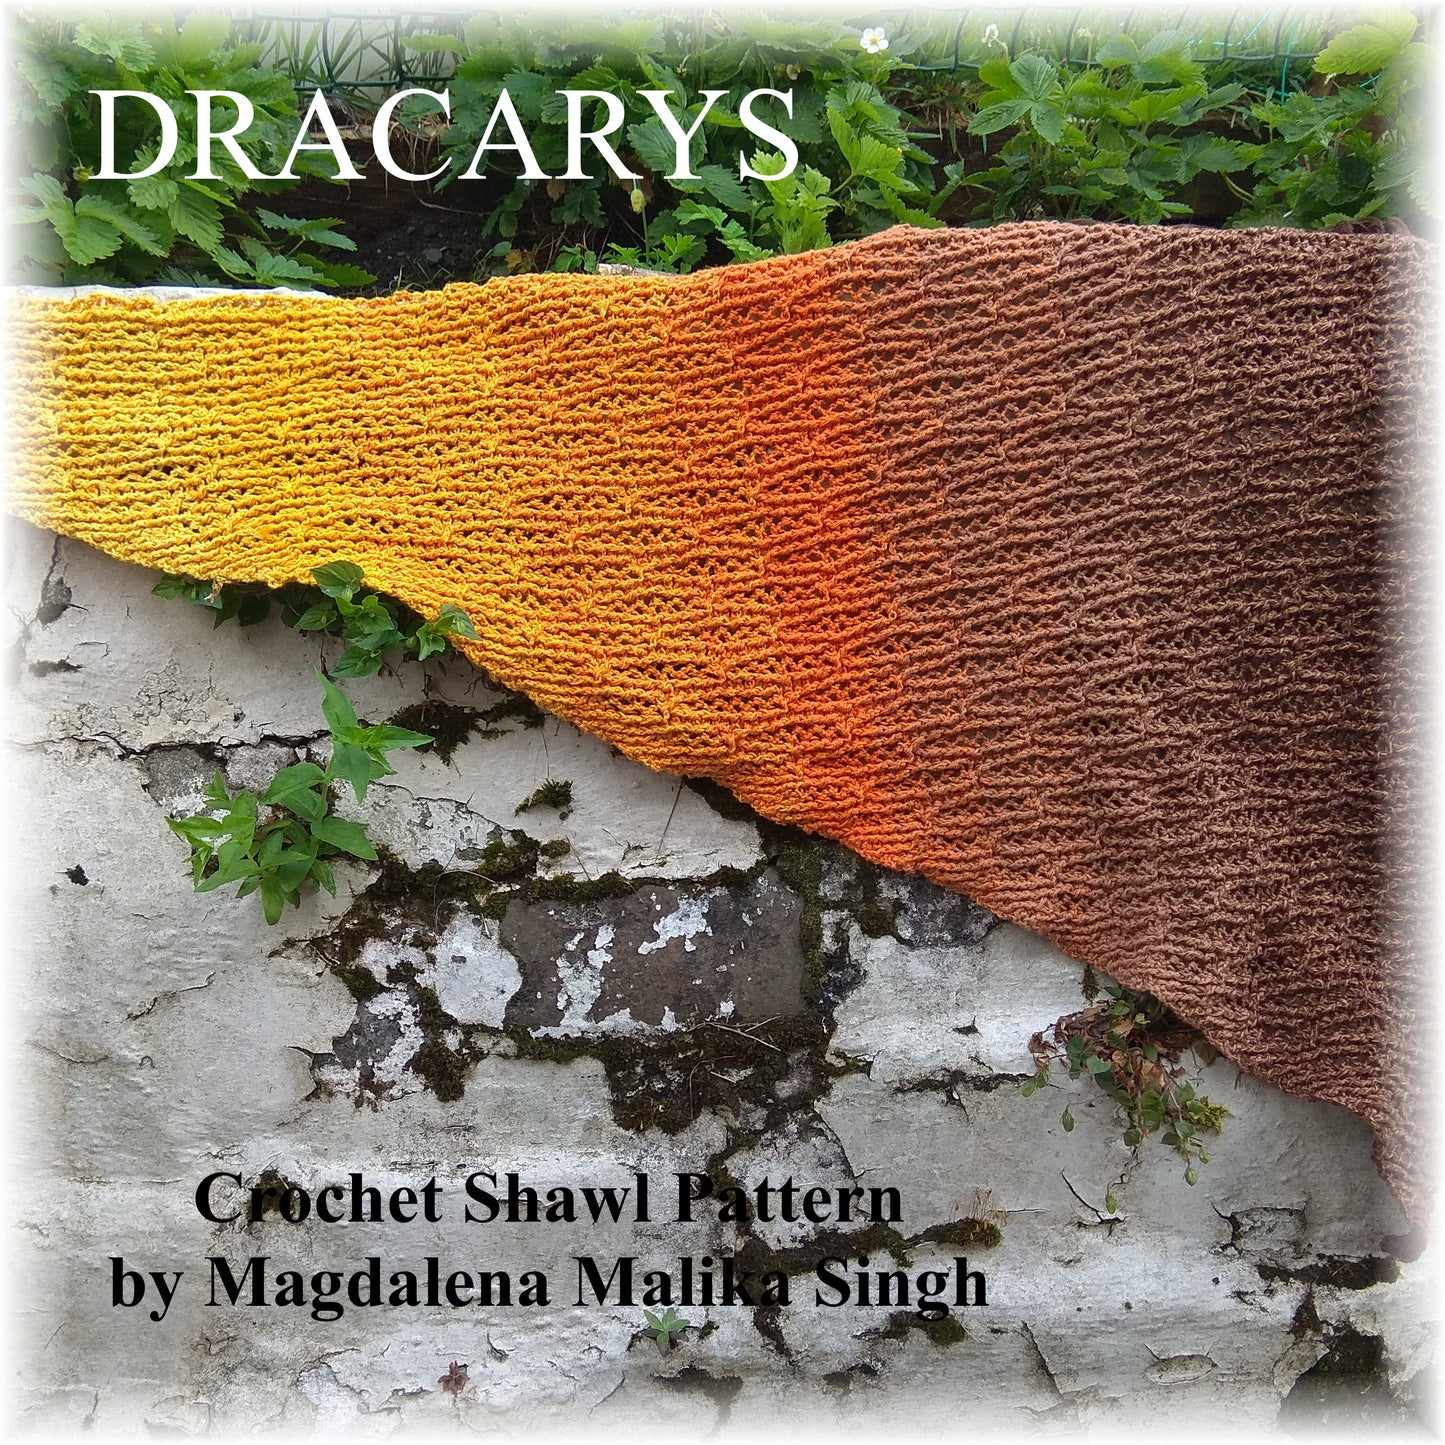 DRACARYS crochet shawl pattern by Magdalena Malika Singh